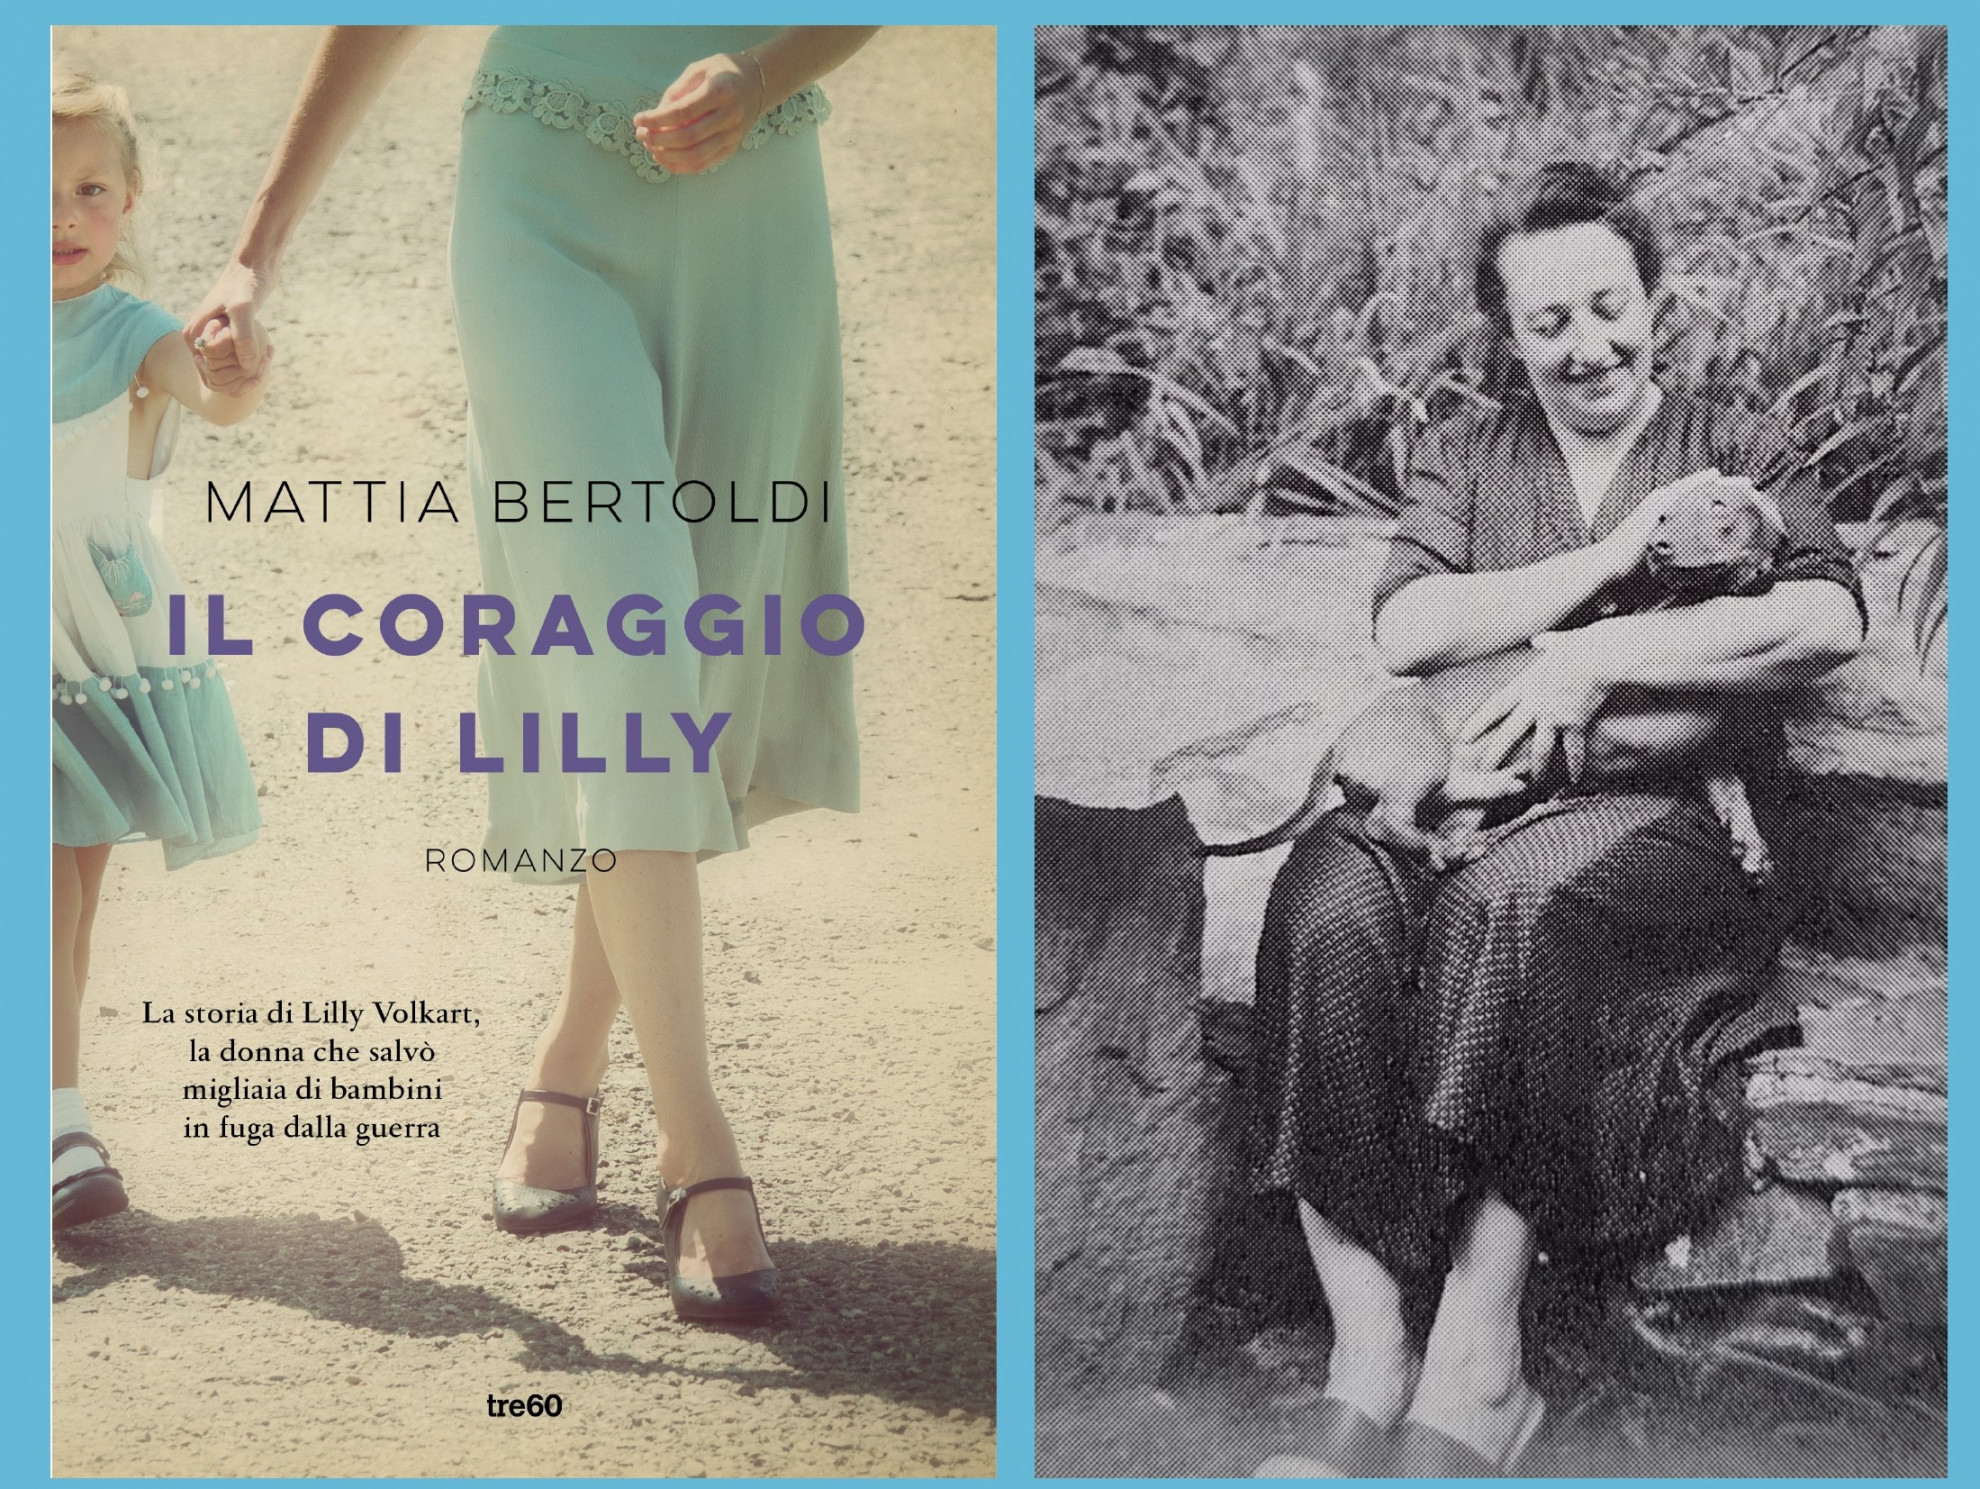 Le cose belle che vorrai ricordare - Mattia Bertoldi - Libro TRE60 2017,  Narrativa TRE60